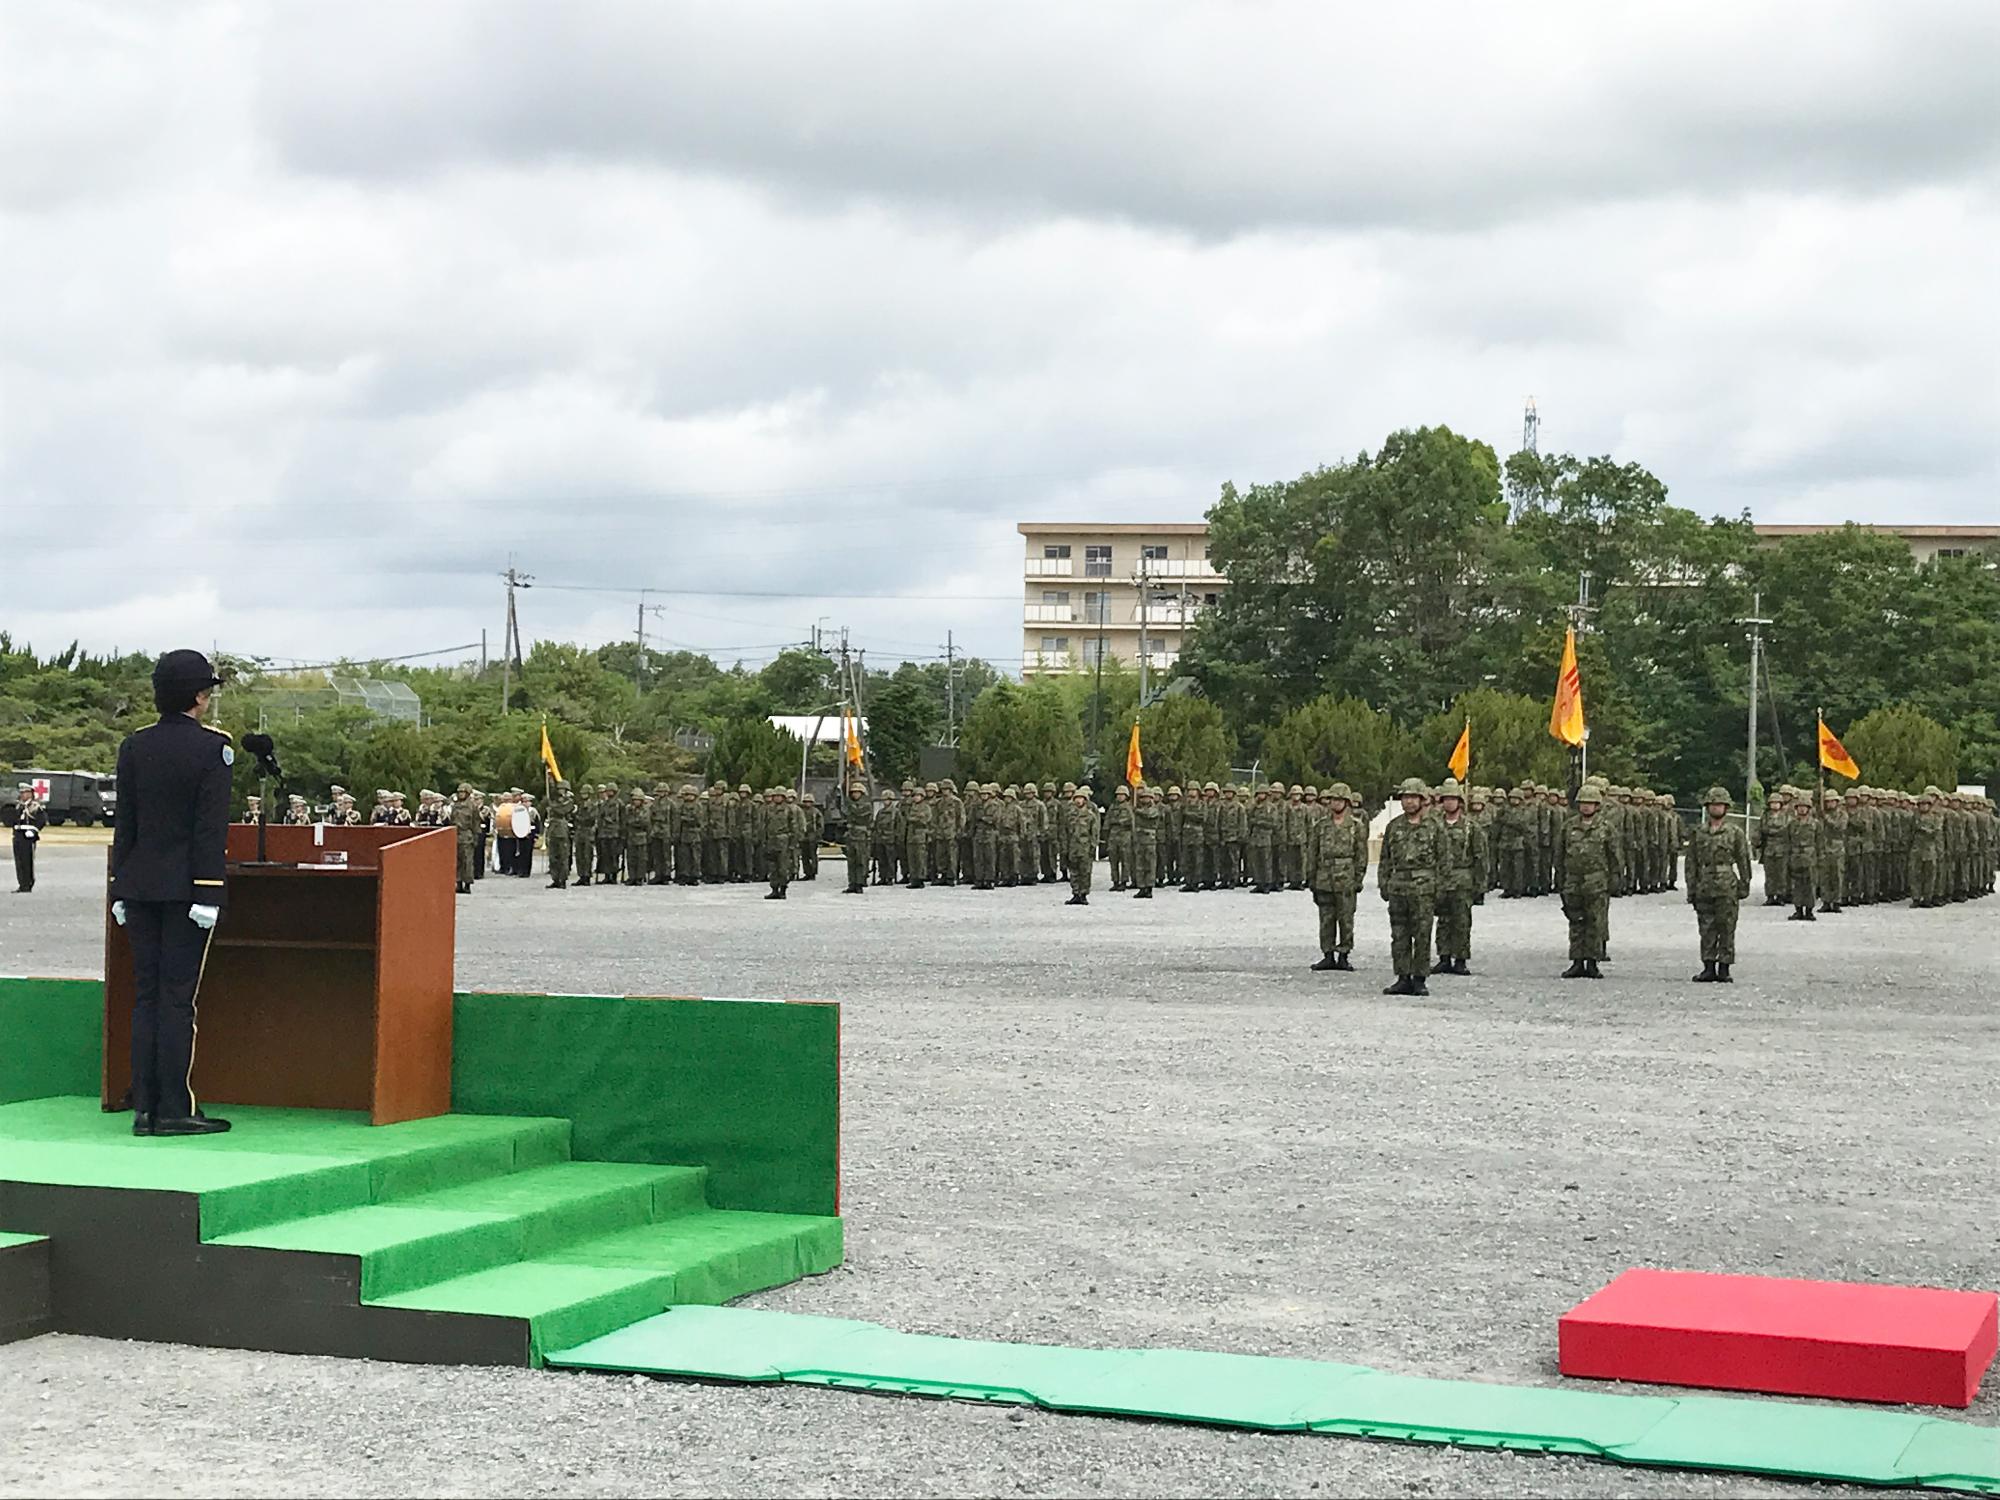 青野原駐屯地創設47周年記念行事式典の様子の写真